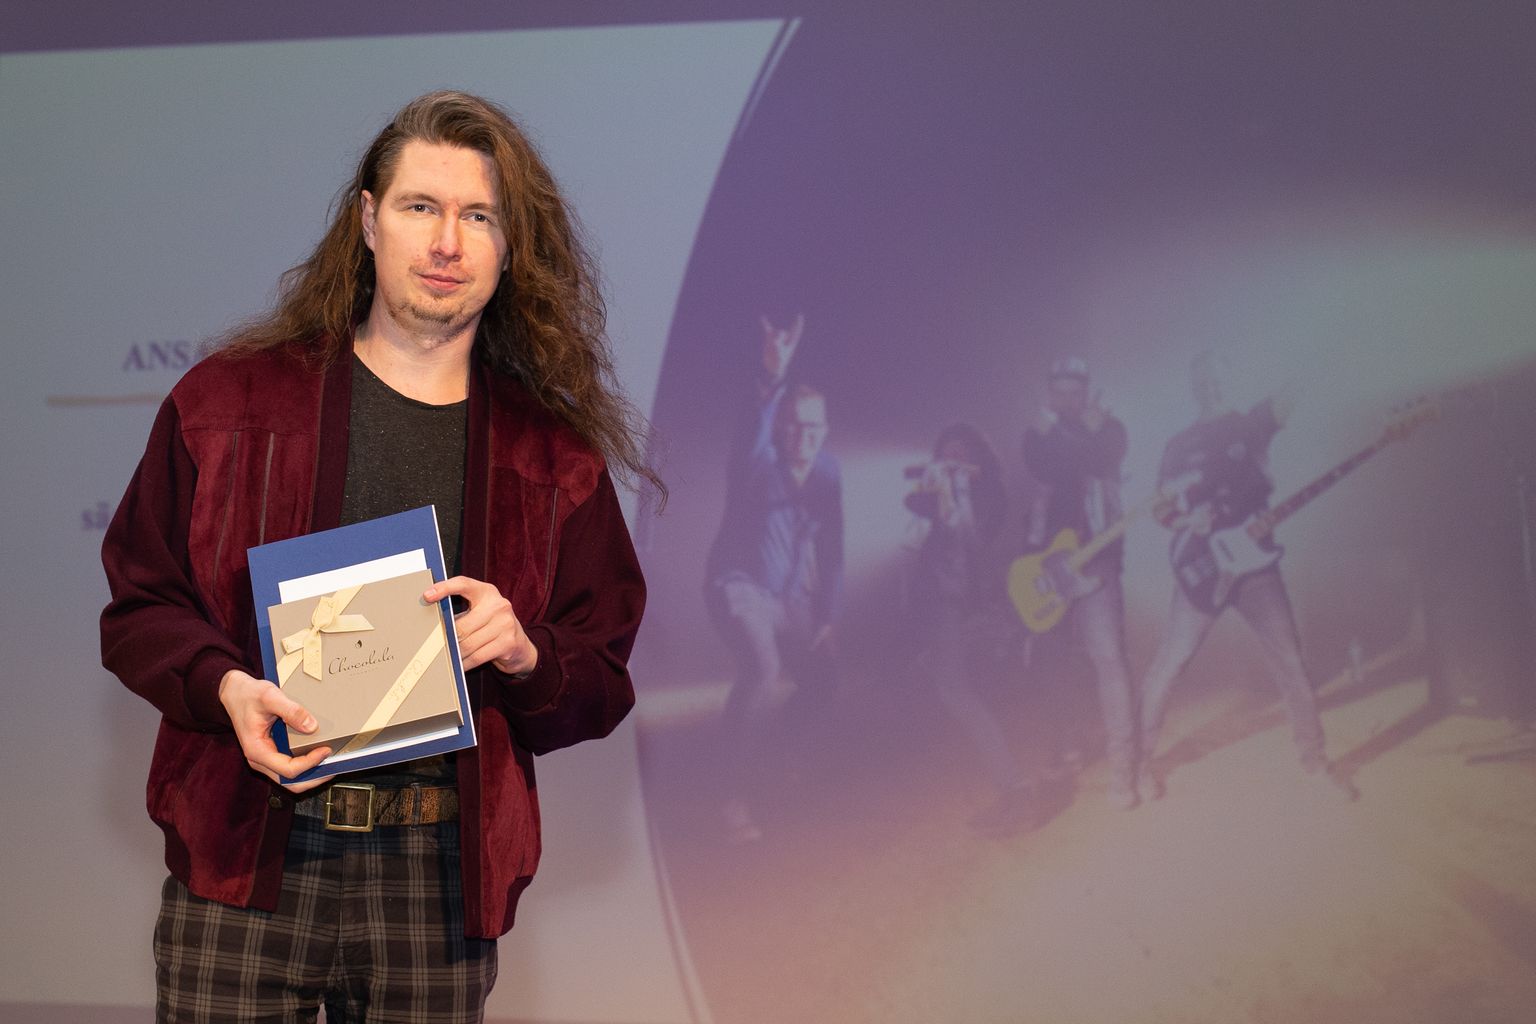 Пеэтер Прикс делит себя между несколькими группами, в январе на сцене Кивиылиского народного дома он принял ежегодную награду "Капитала культуры" как гитарист фолк-рок-группы "Mandoterror".